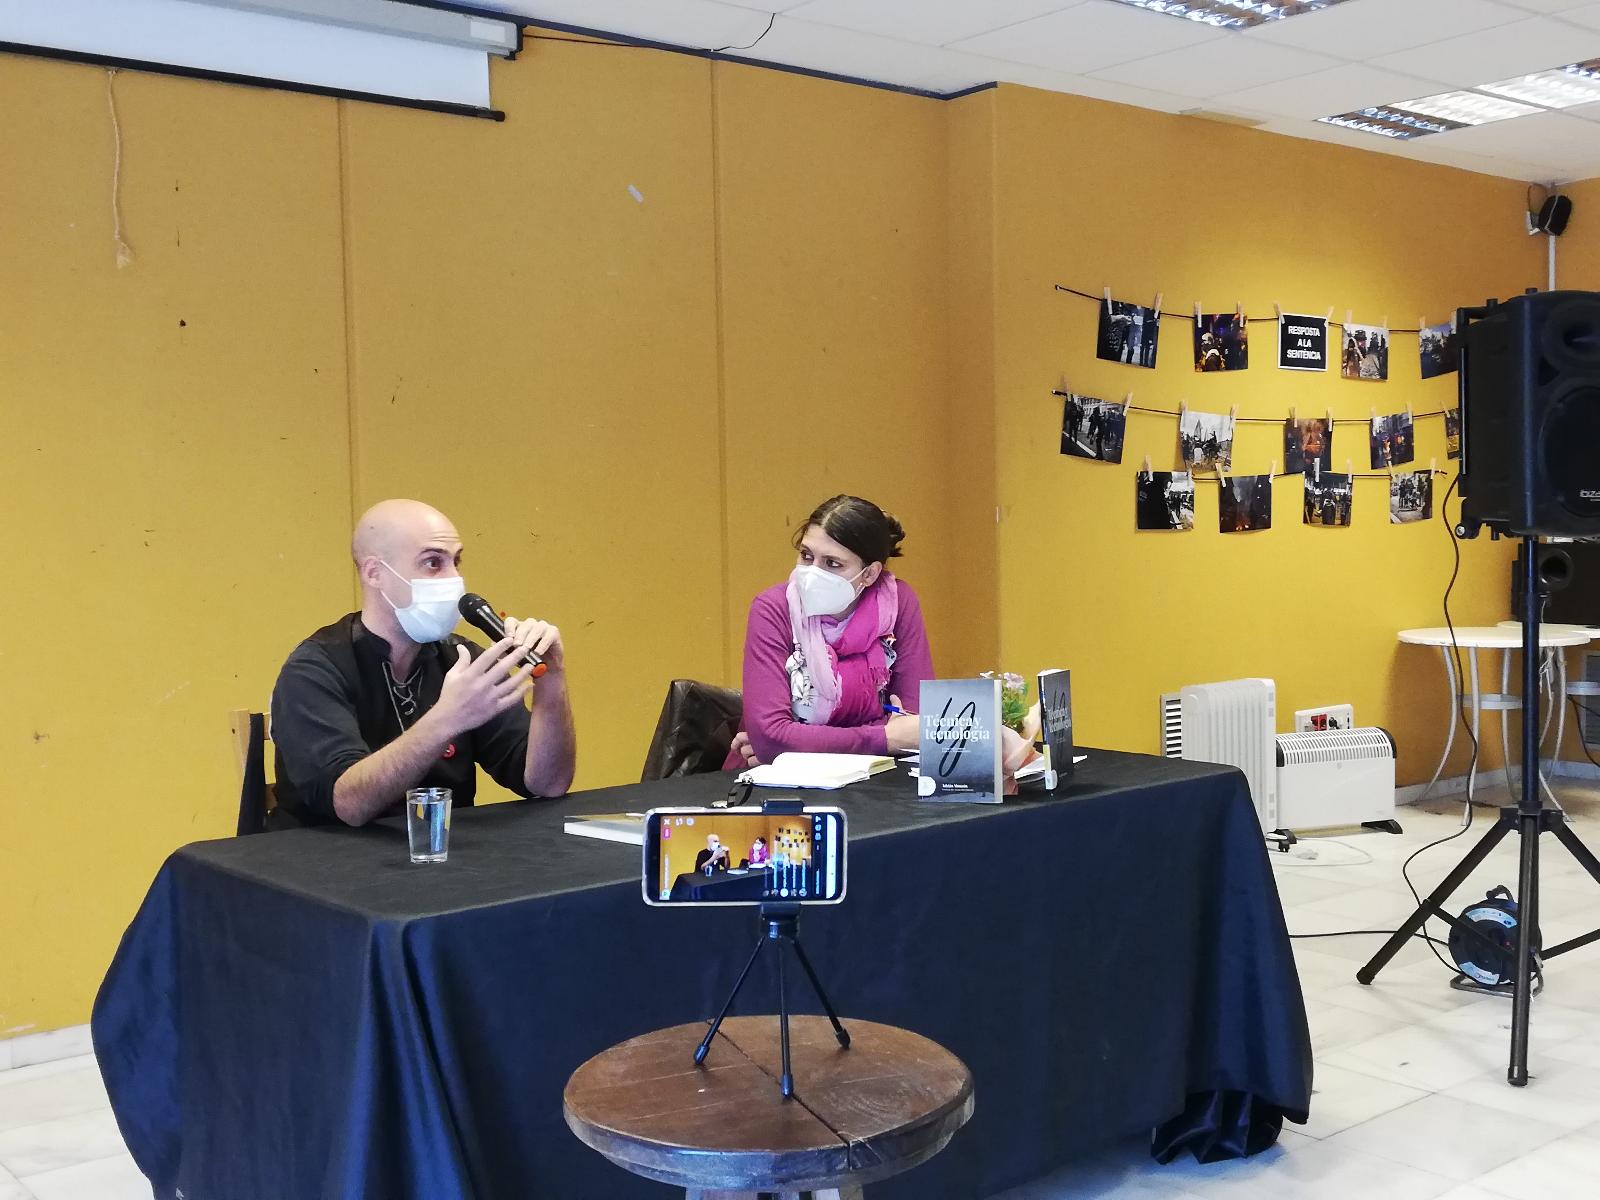 Presentació de llibre i debat obert a l'Ateneu Salvadora Catà, Adrián Almazán